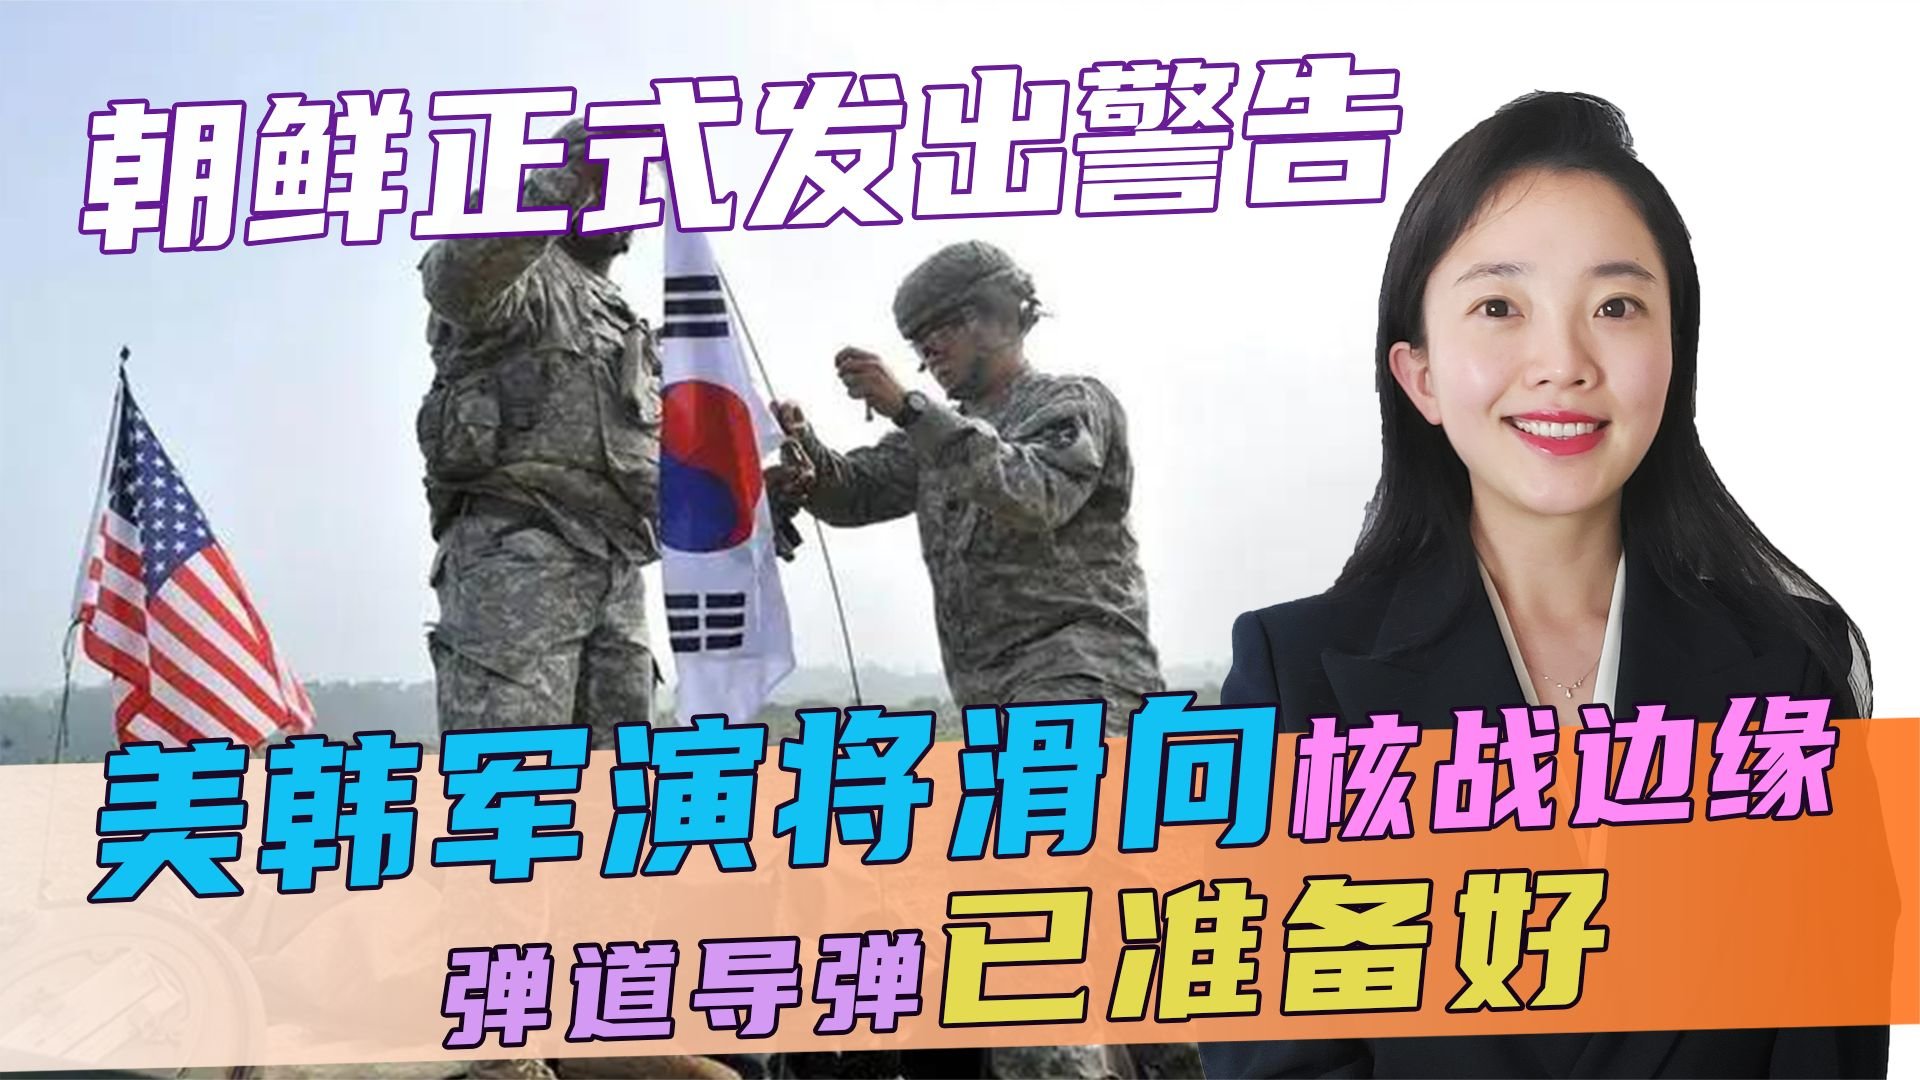 朝鲜疑似“对美作战图”曝光 引发多方猜测_ 视频中国